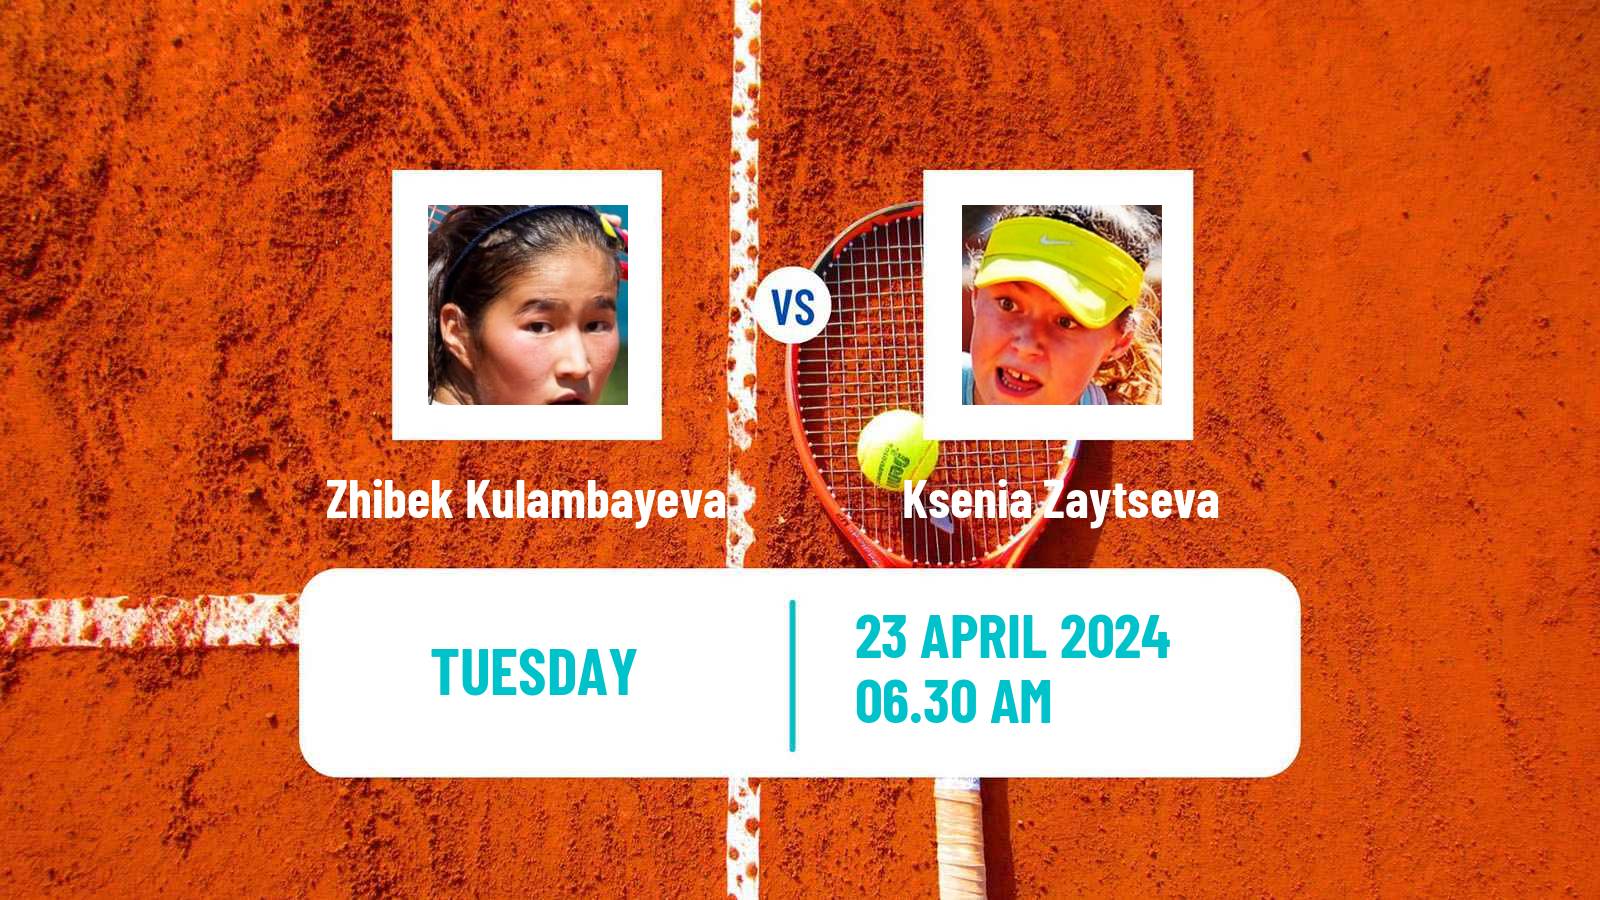 Tennis ITF W35 Hammamet 6 Women Zhibek Kulambayeva - Ksenia Zaytseva